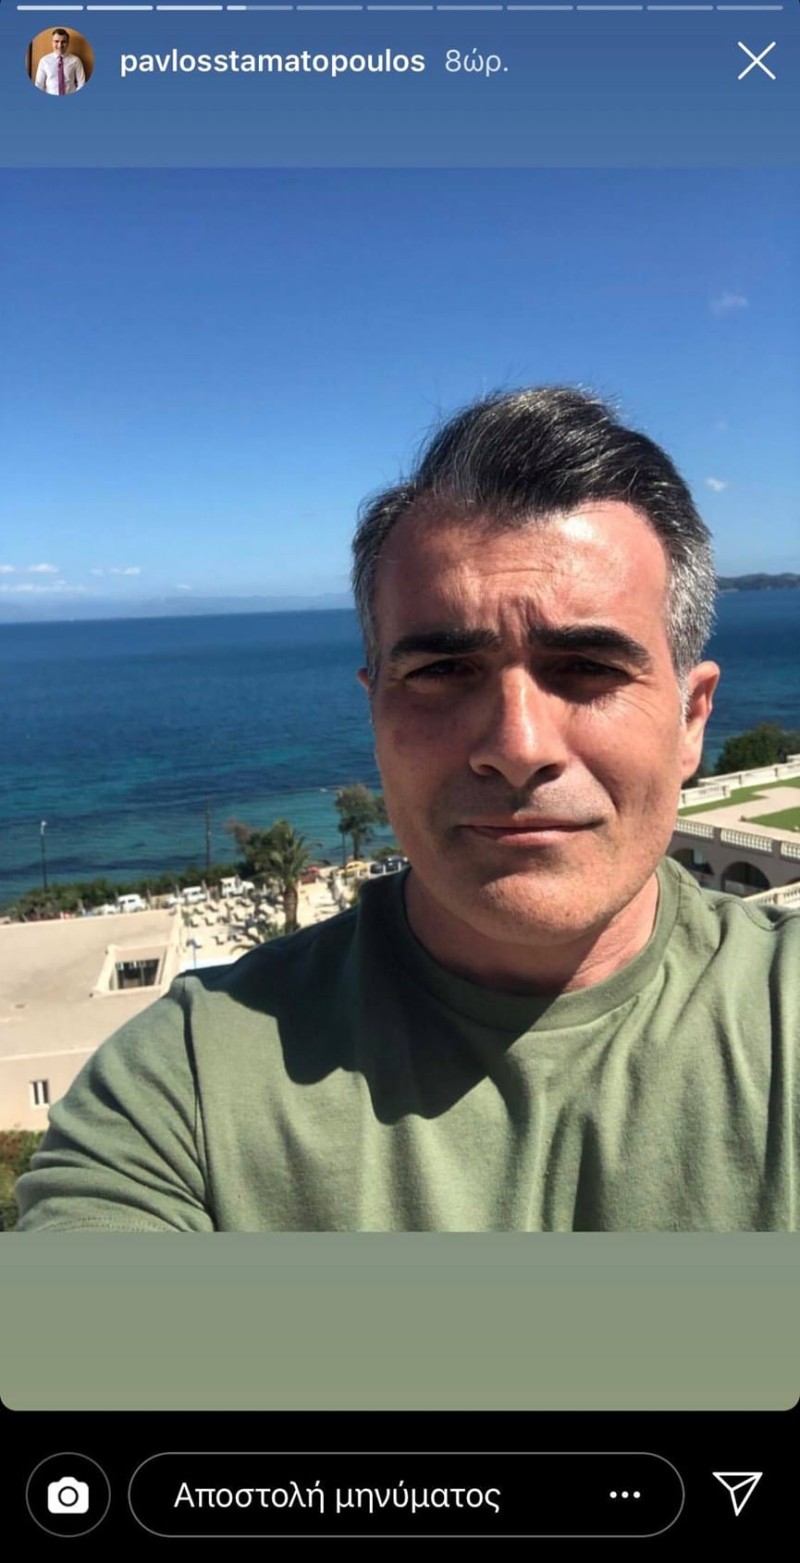 Η ανακοίνωση για το ατύχημα που είχε ο παρουσιαστής του Open tv, Παύλος Σταματόπουλος